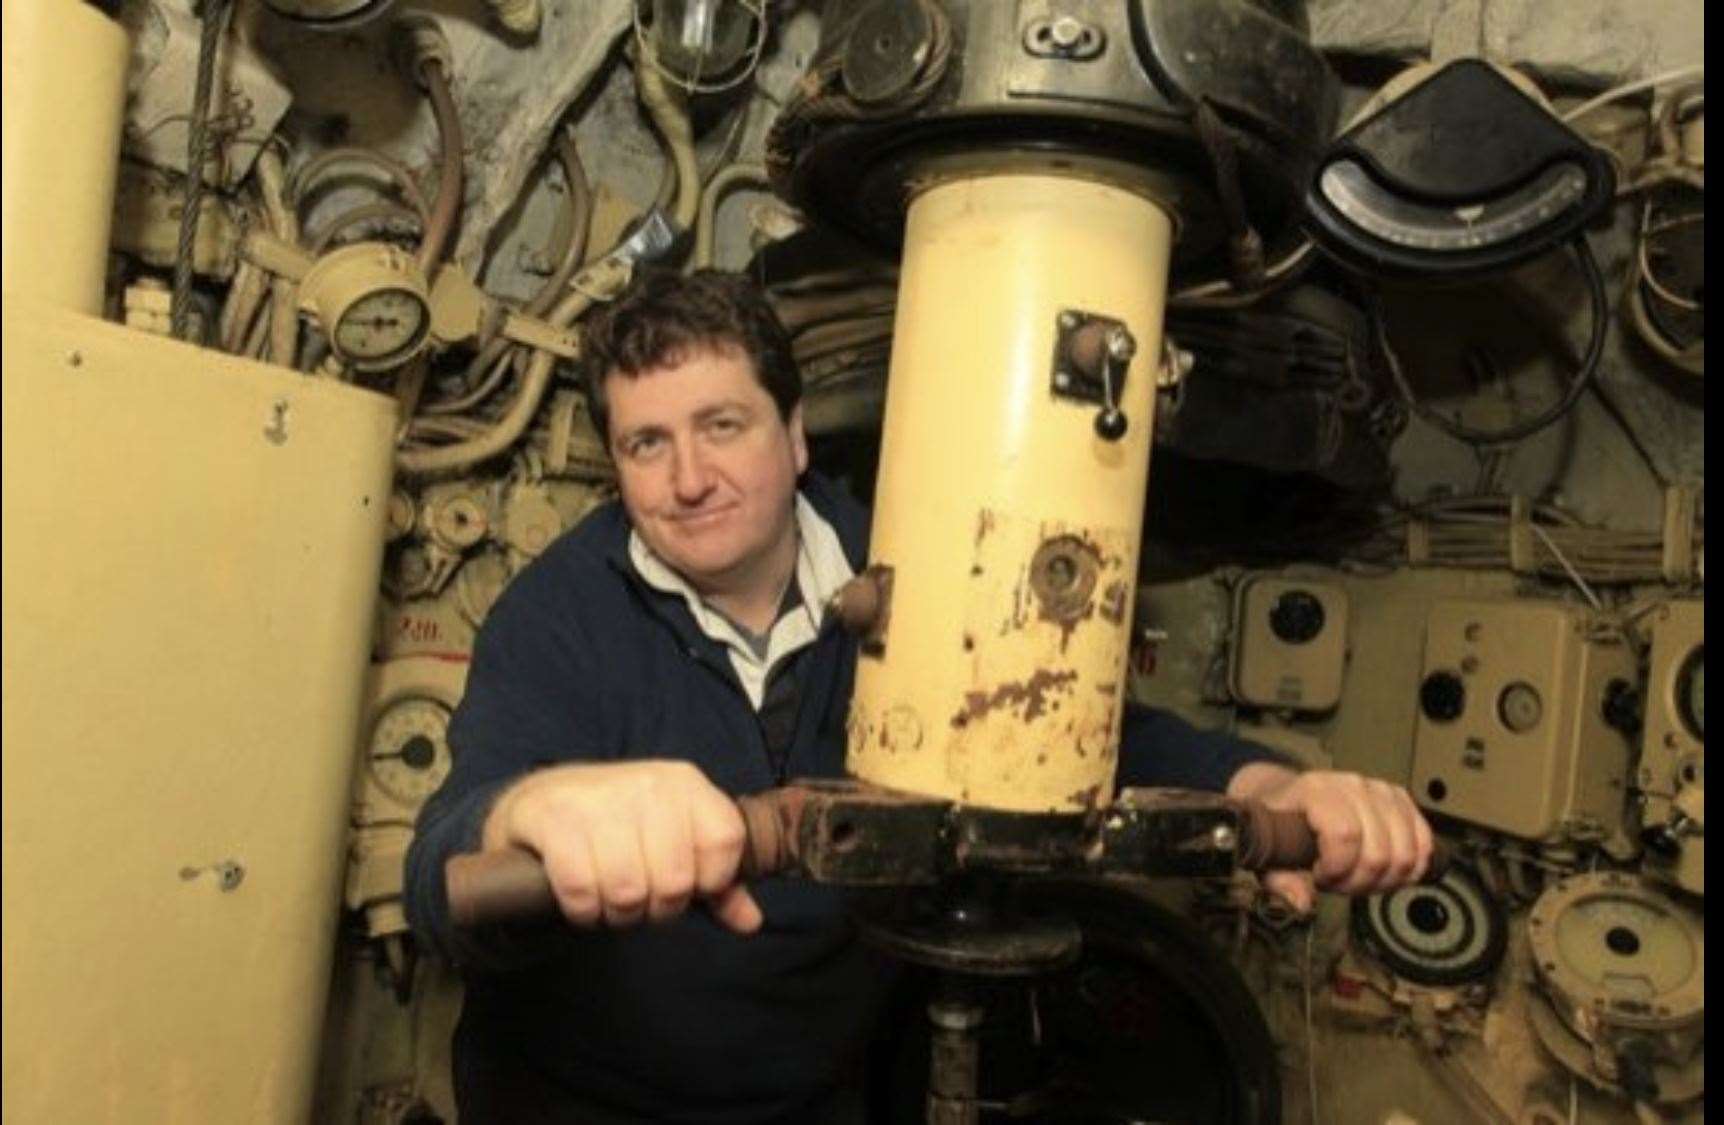 John Sutton on board the Russian sub